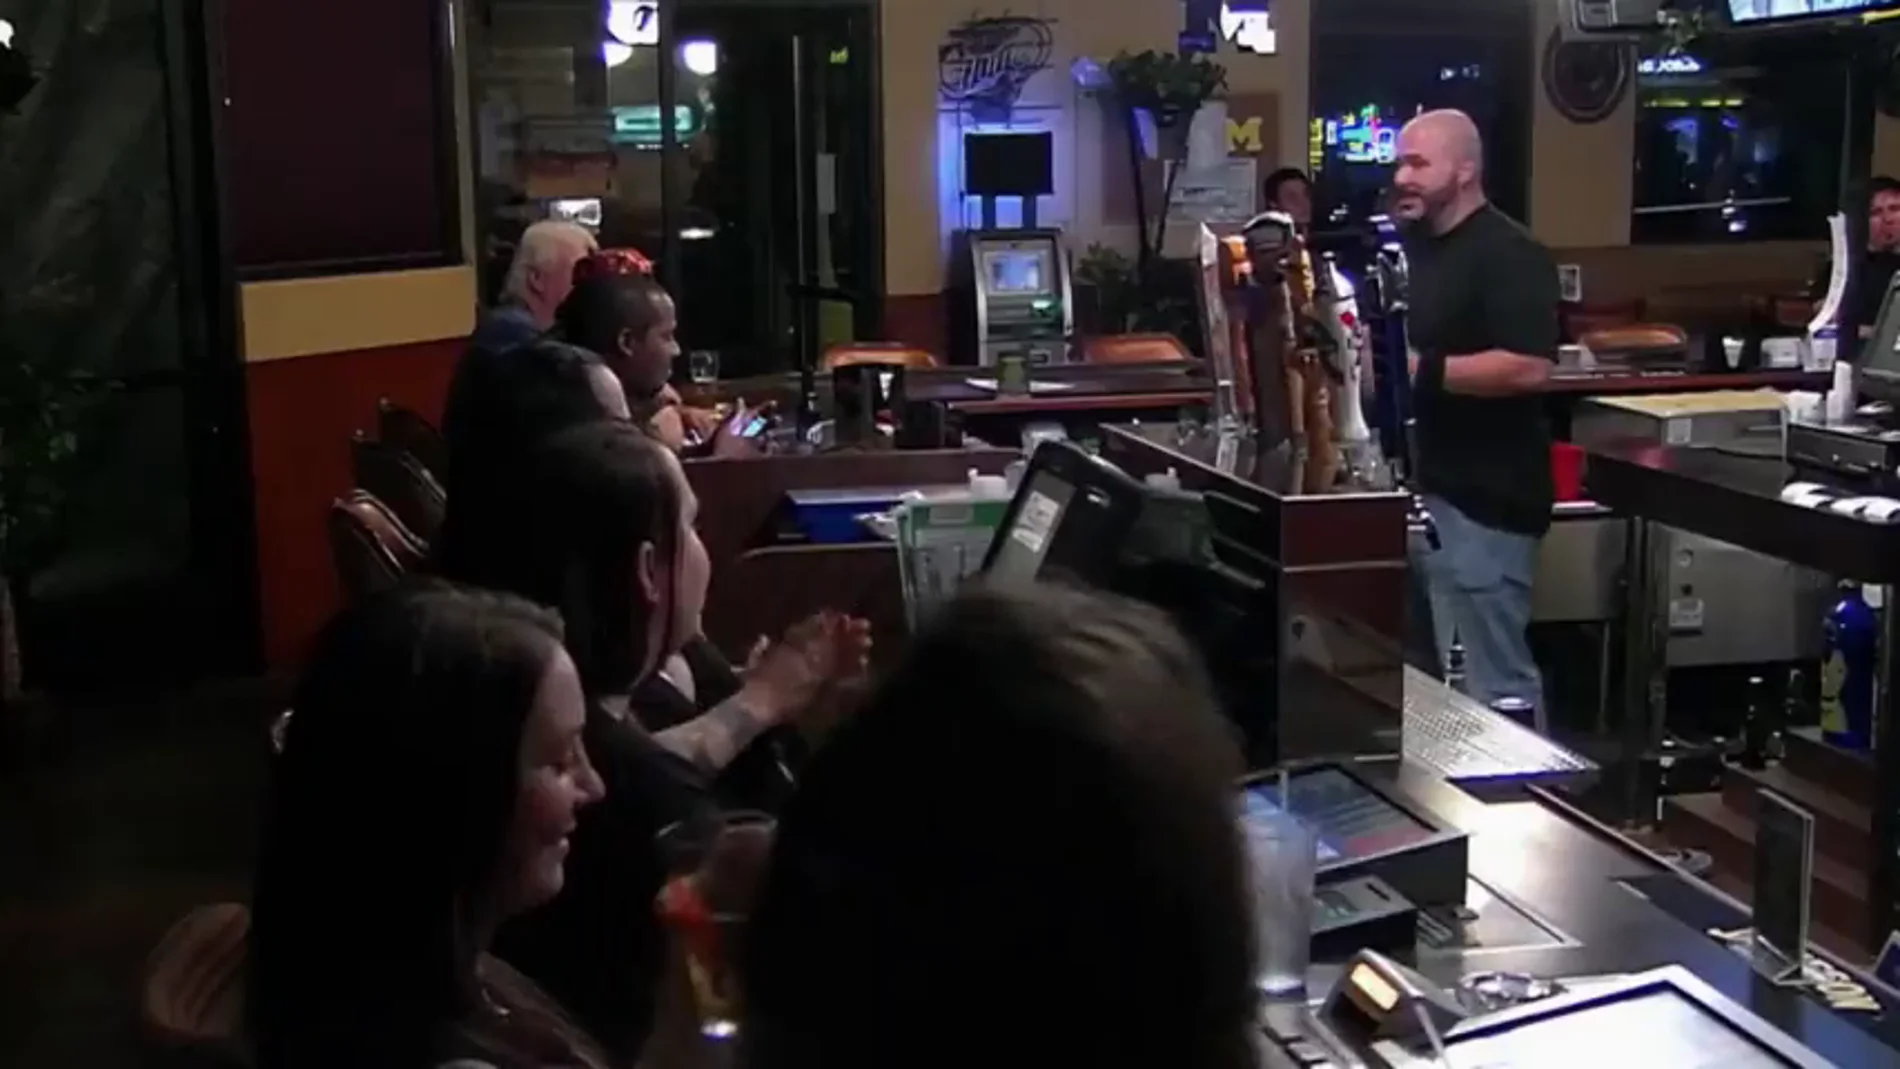 Un encargado vende su propia bebida en el bar de otro